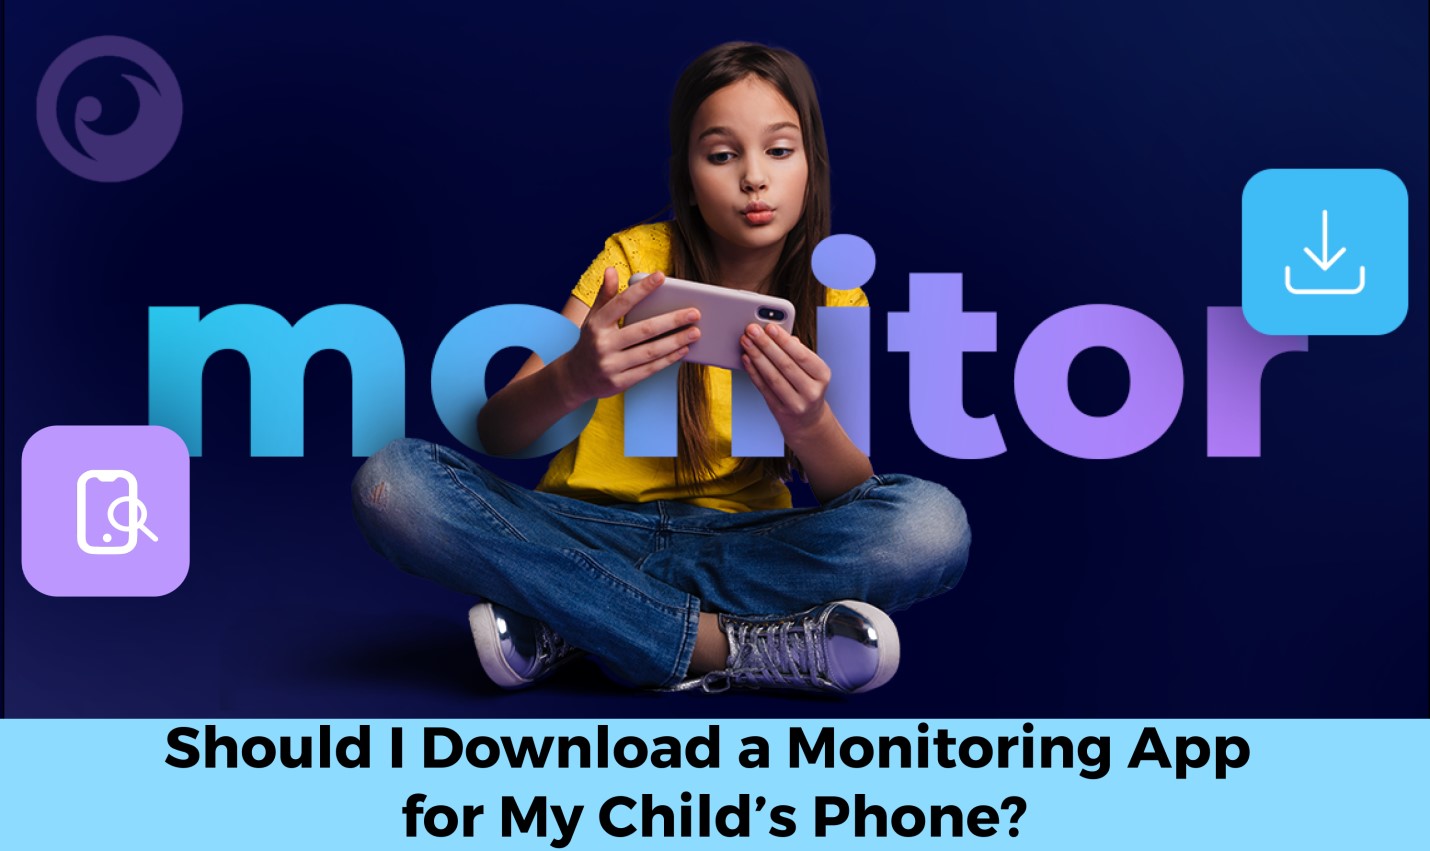 Mám si stiahnuť monitorovaciu aplikáciu pre telefón môjho dieťaťa? - spravodajský obrázok na imei.info